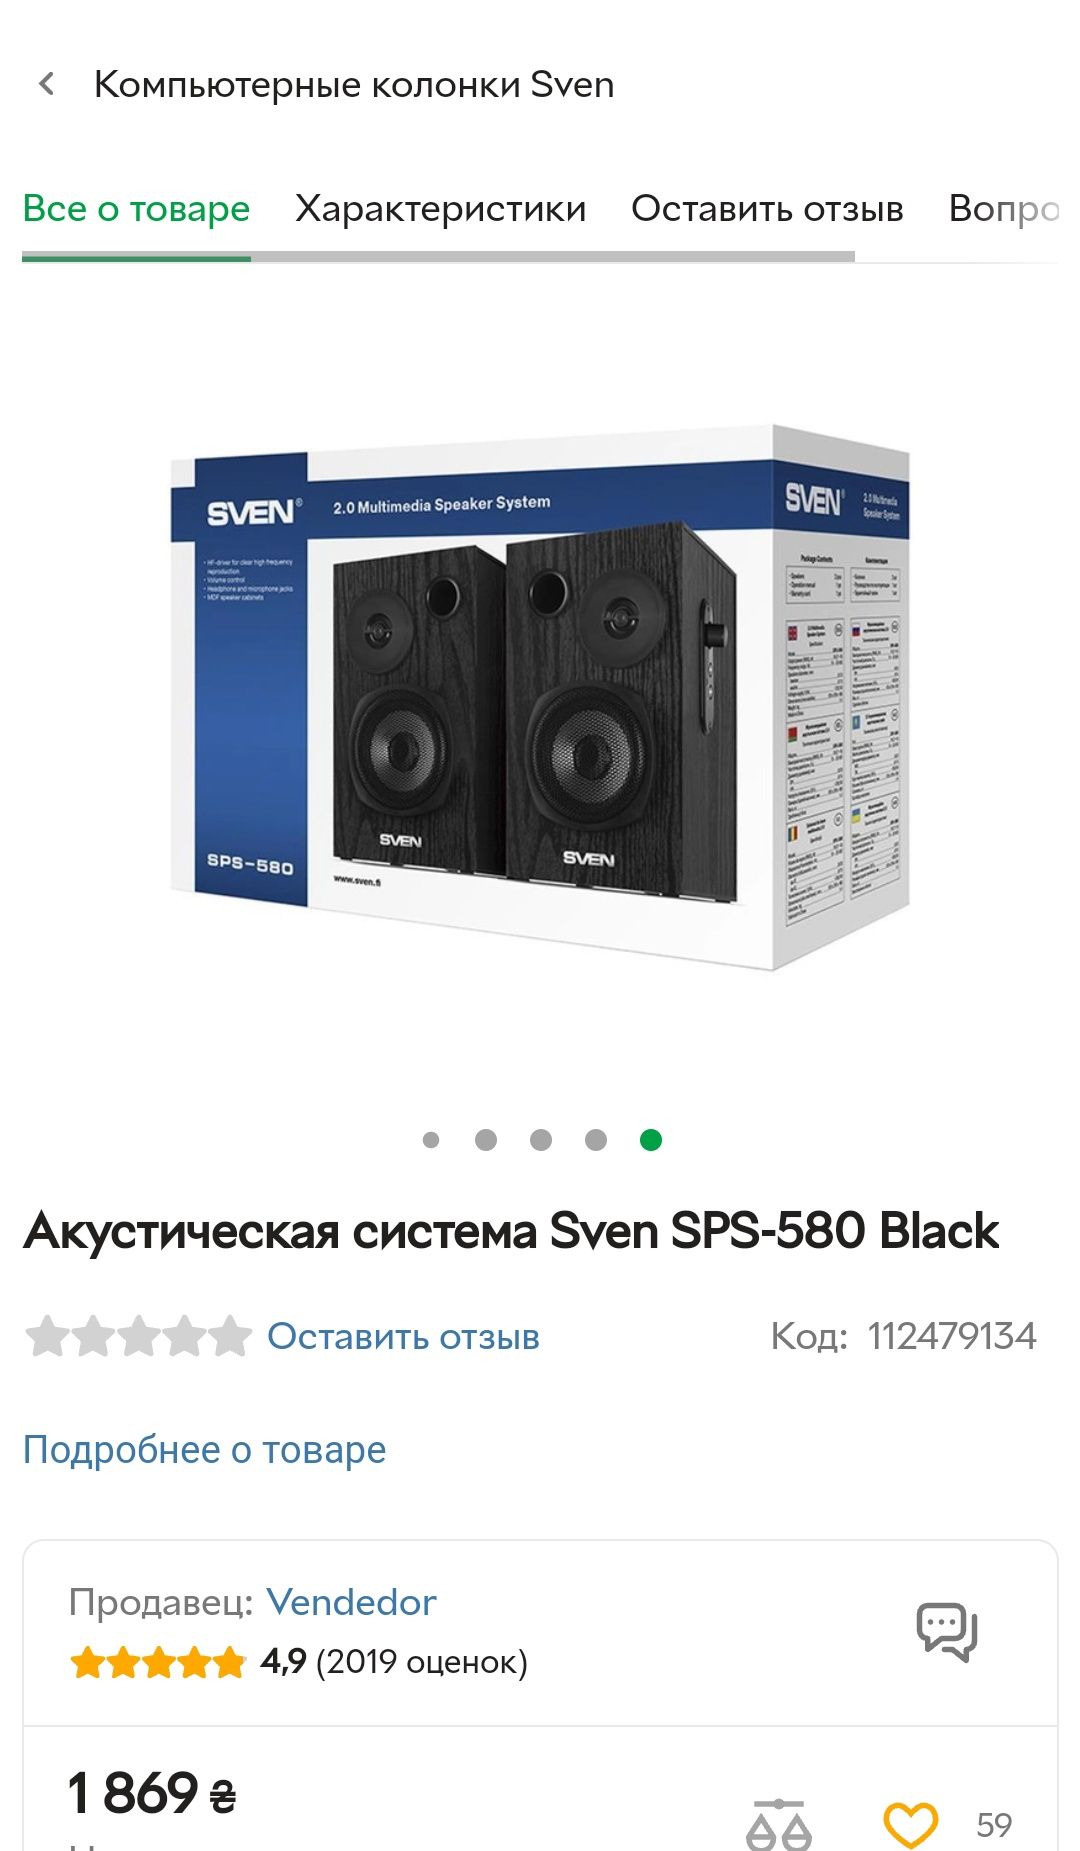 Акустическая система Sven SPS-580 Black